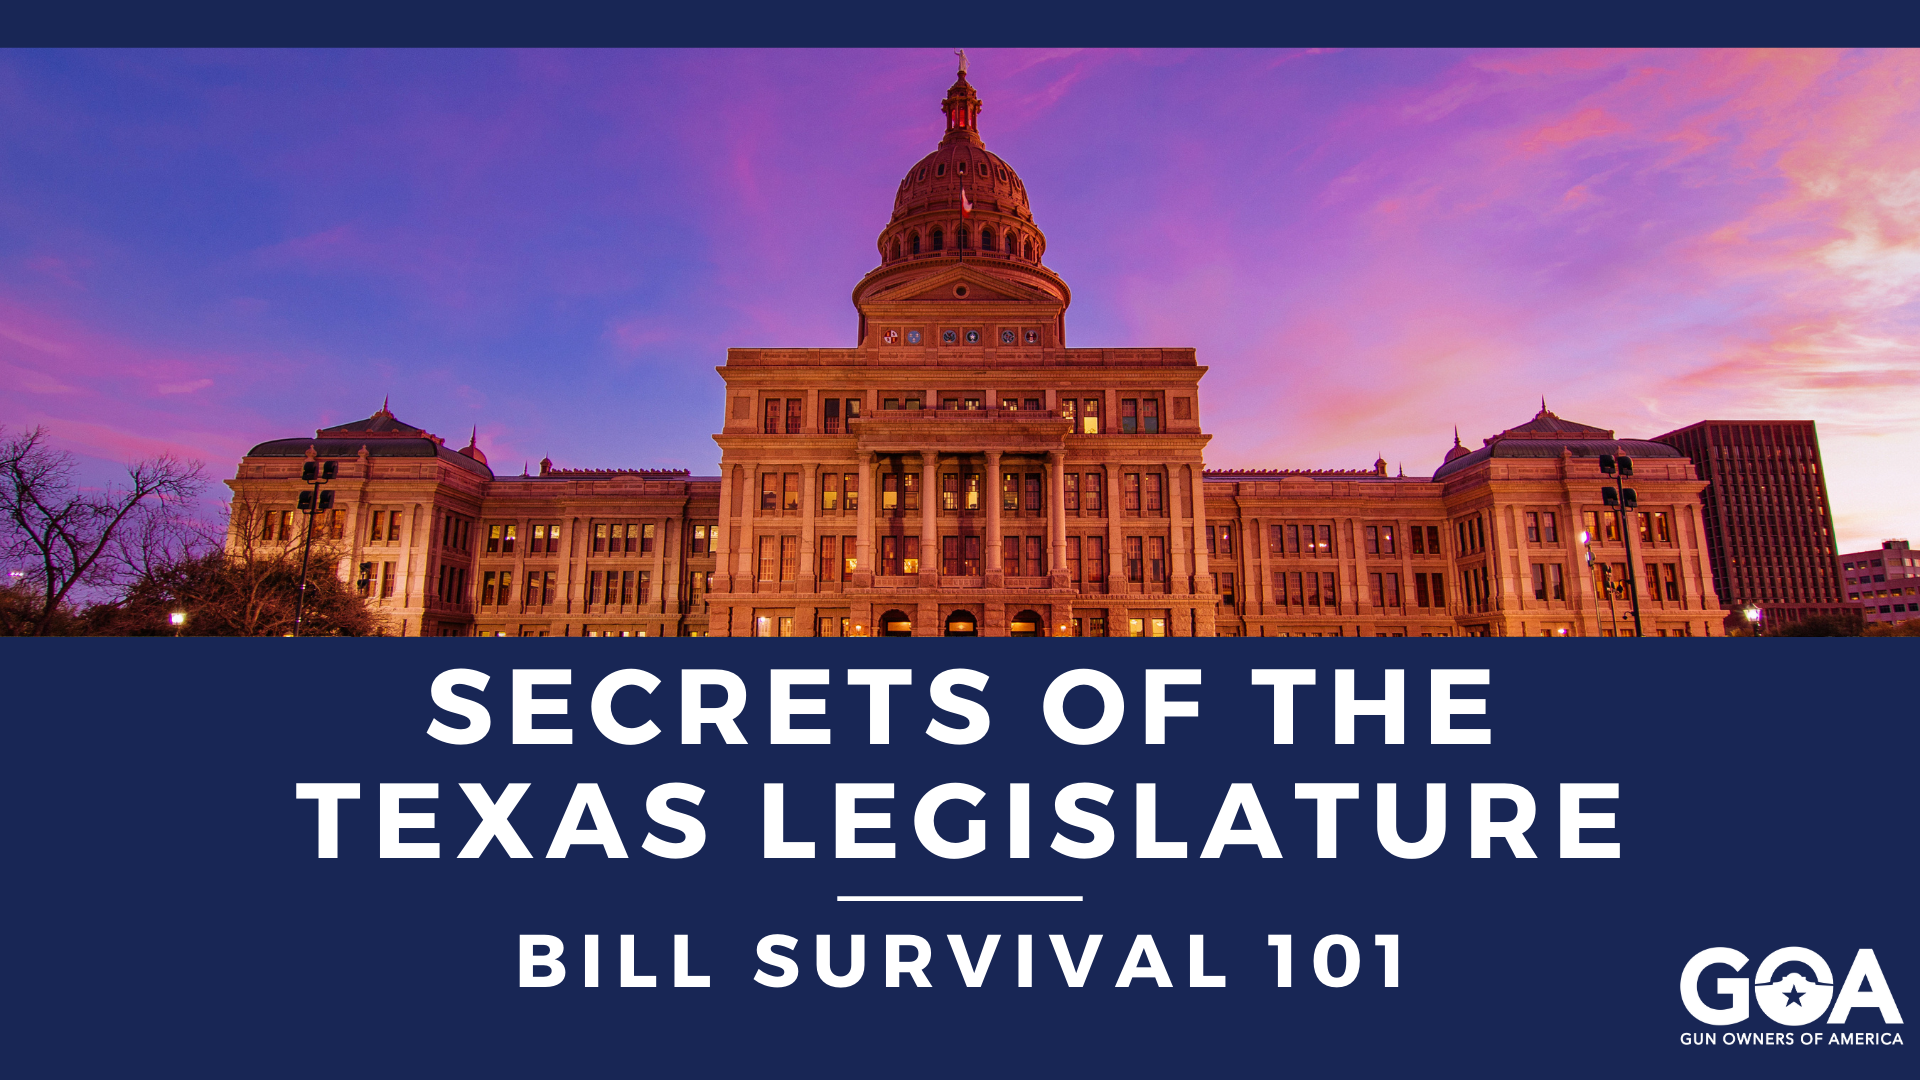 Secrets of the Texas Legislature Bill Survival 101 GOA Texas